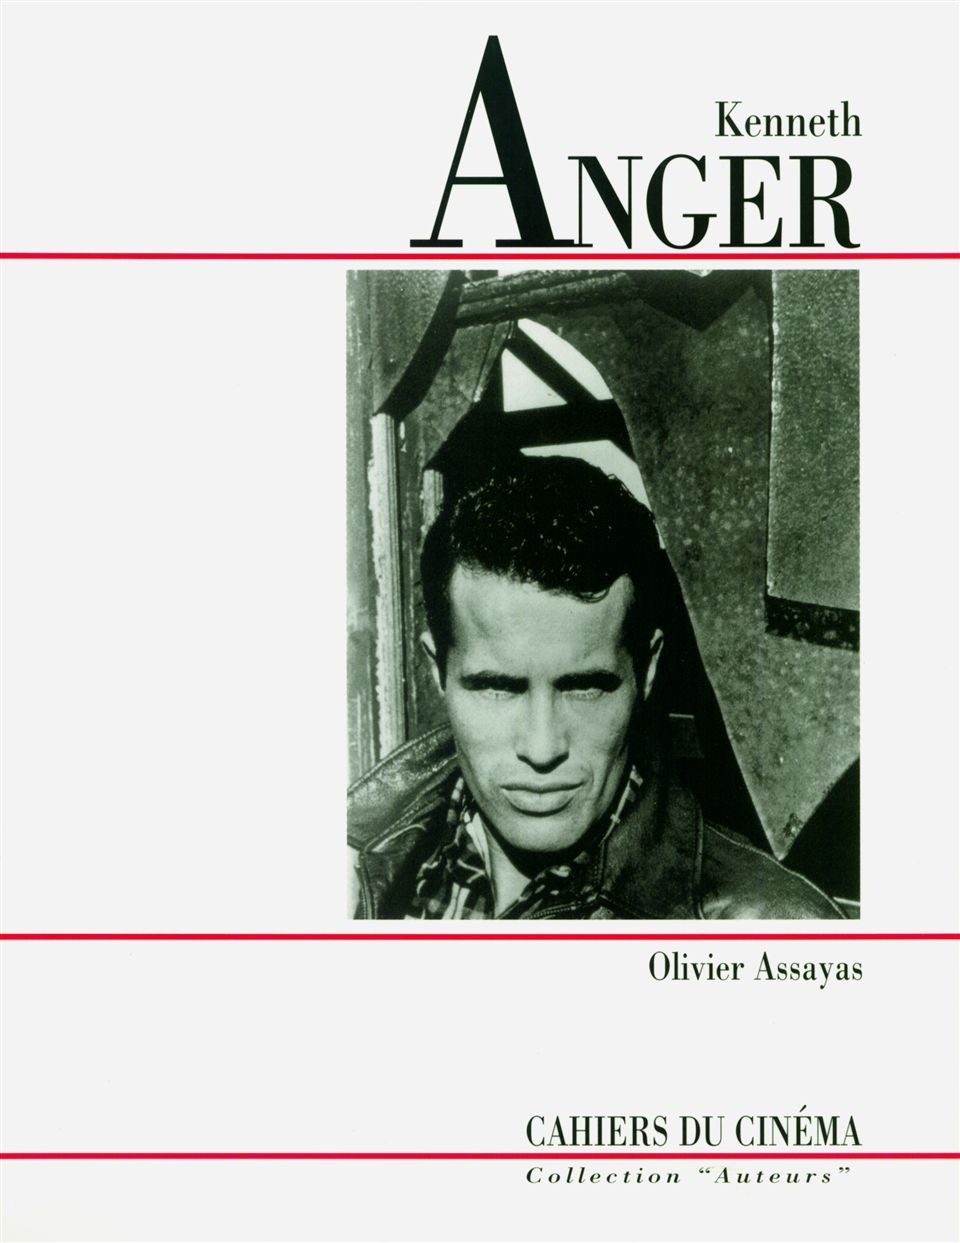 Book Kenneth Anger Olivier Assayas